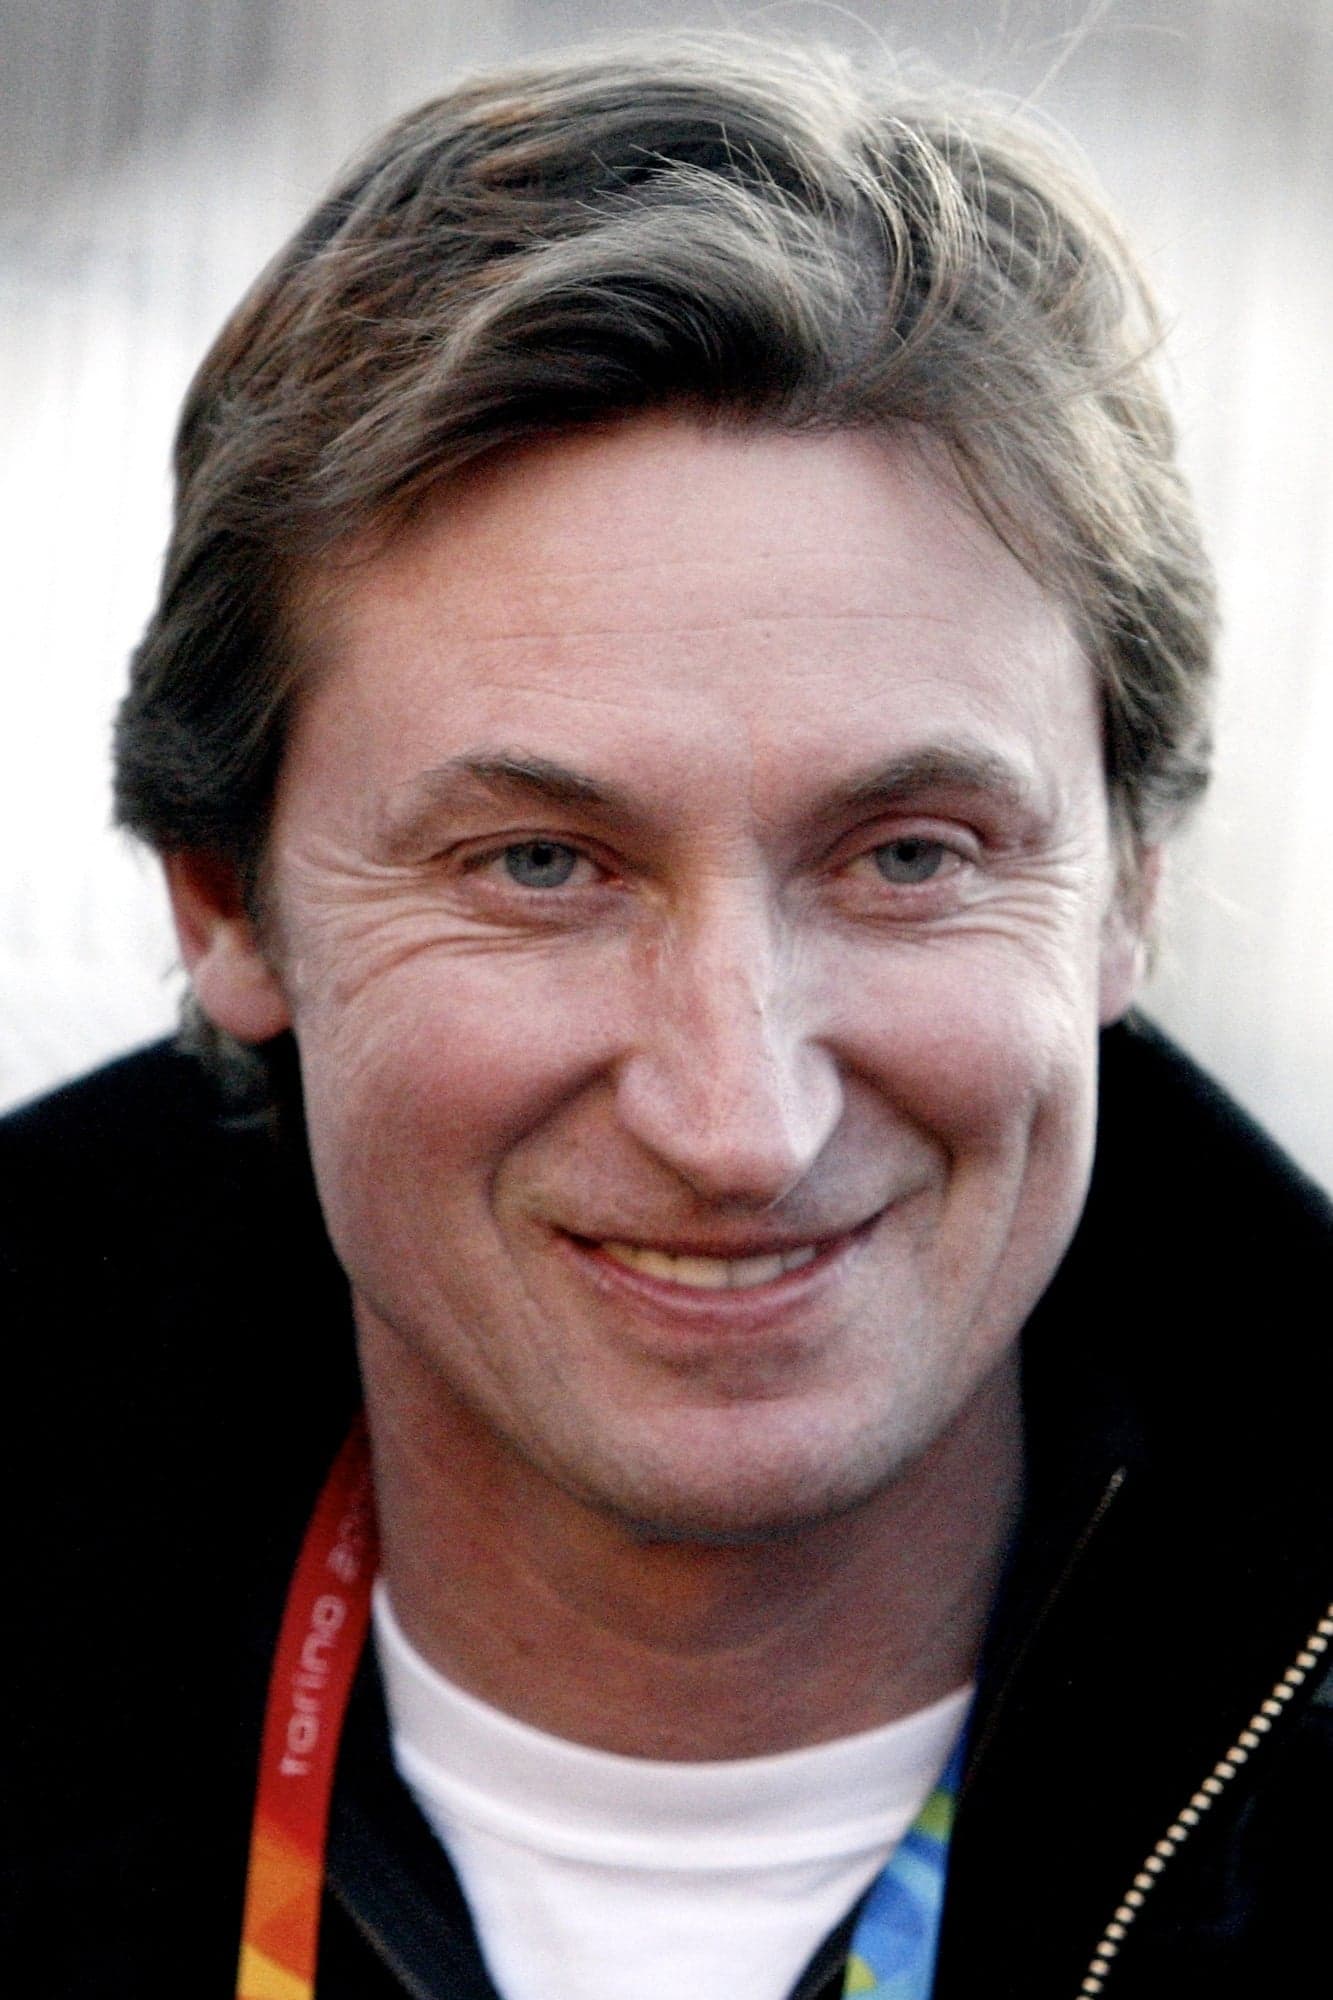 Wayne Gretzky | Wayne Gretzky